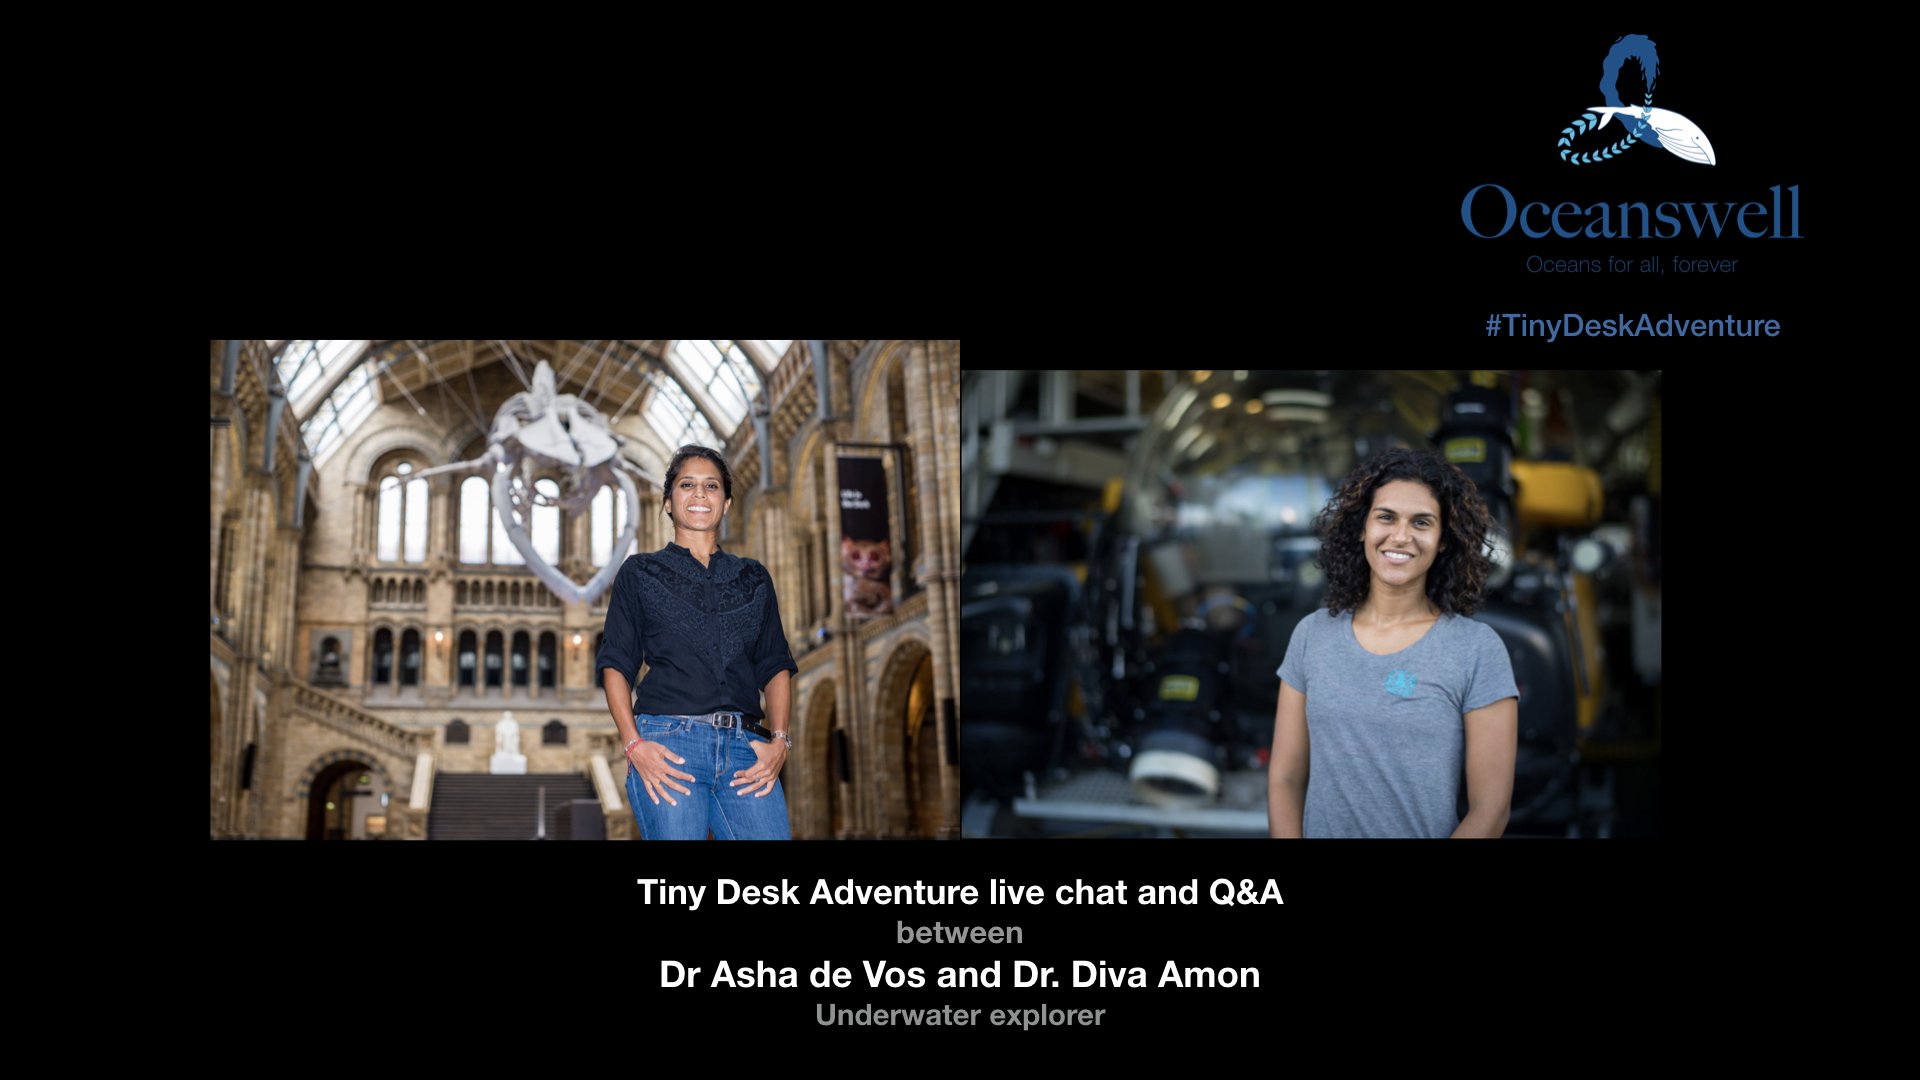 TINY DESK ADVENTURES INSTAGRAM LIVE Q&A WITH DR ASHA DE VOS AND DR DIVA AMON 1